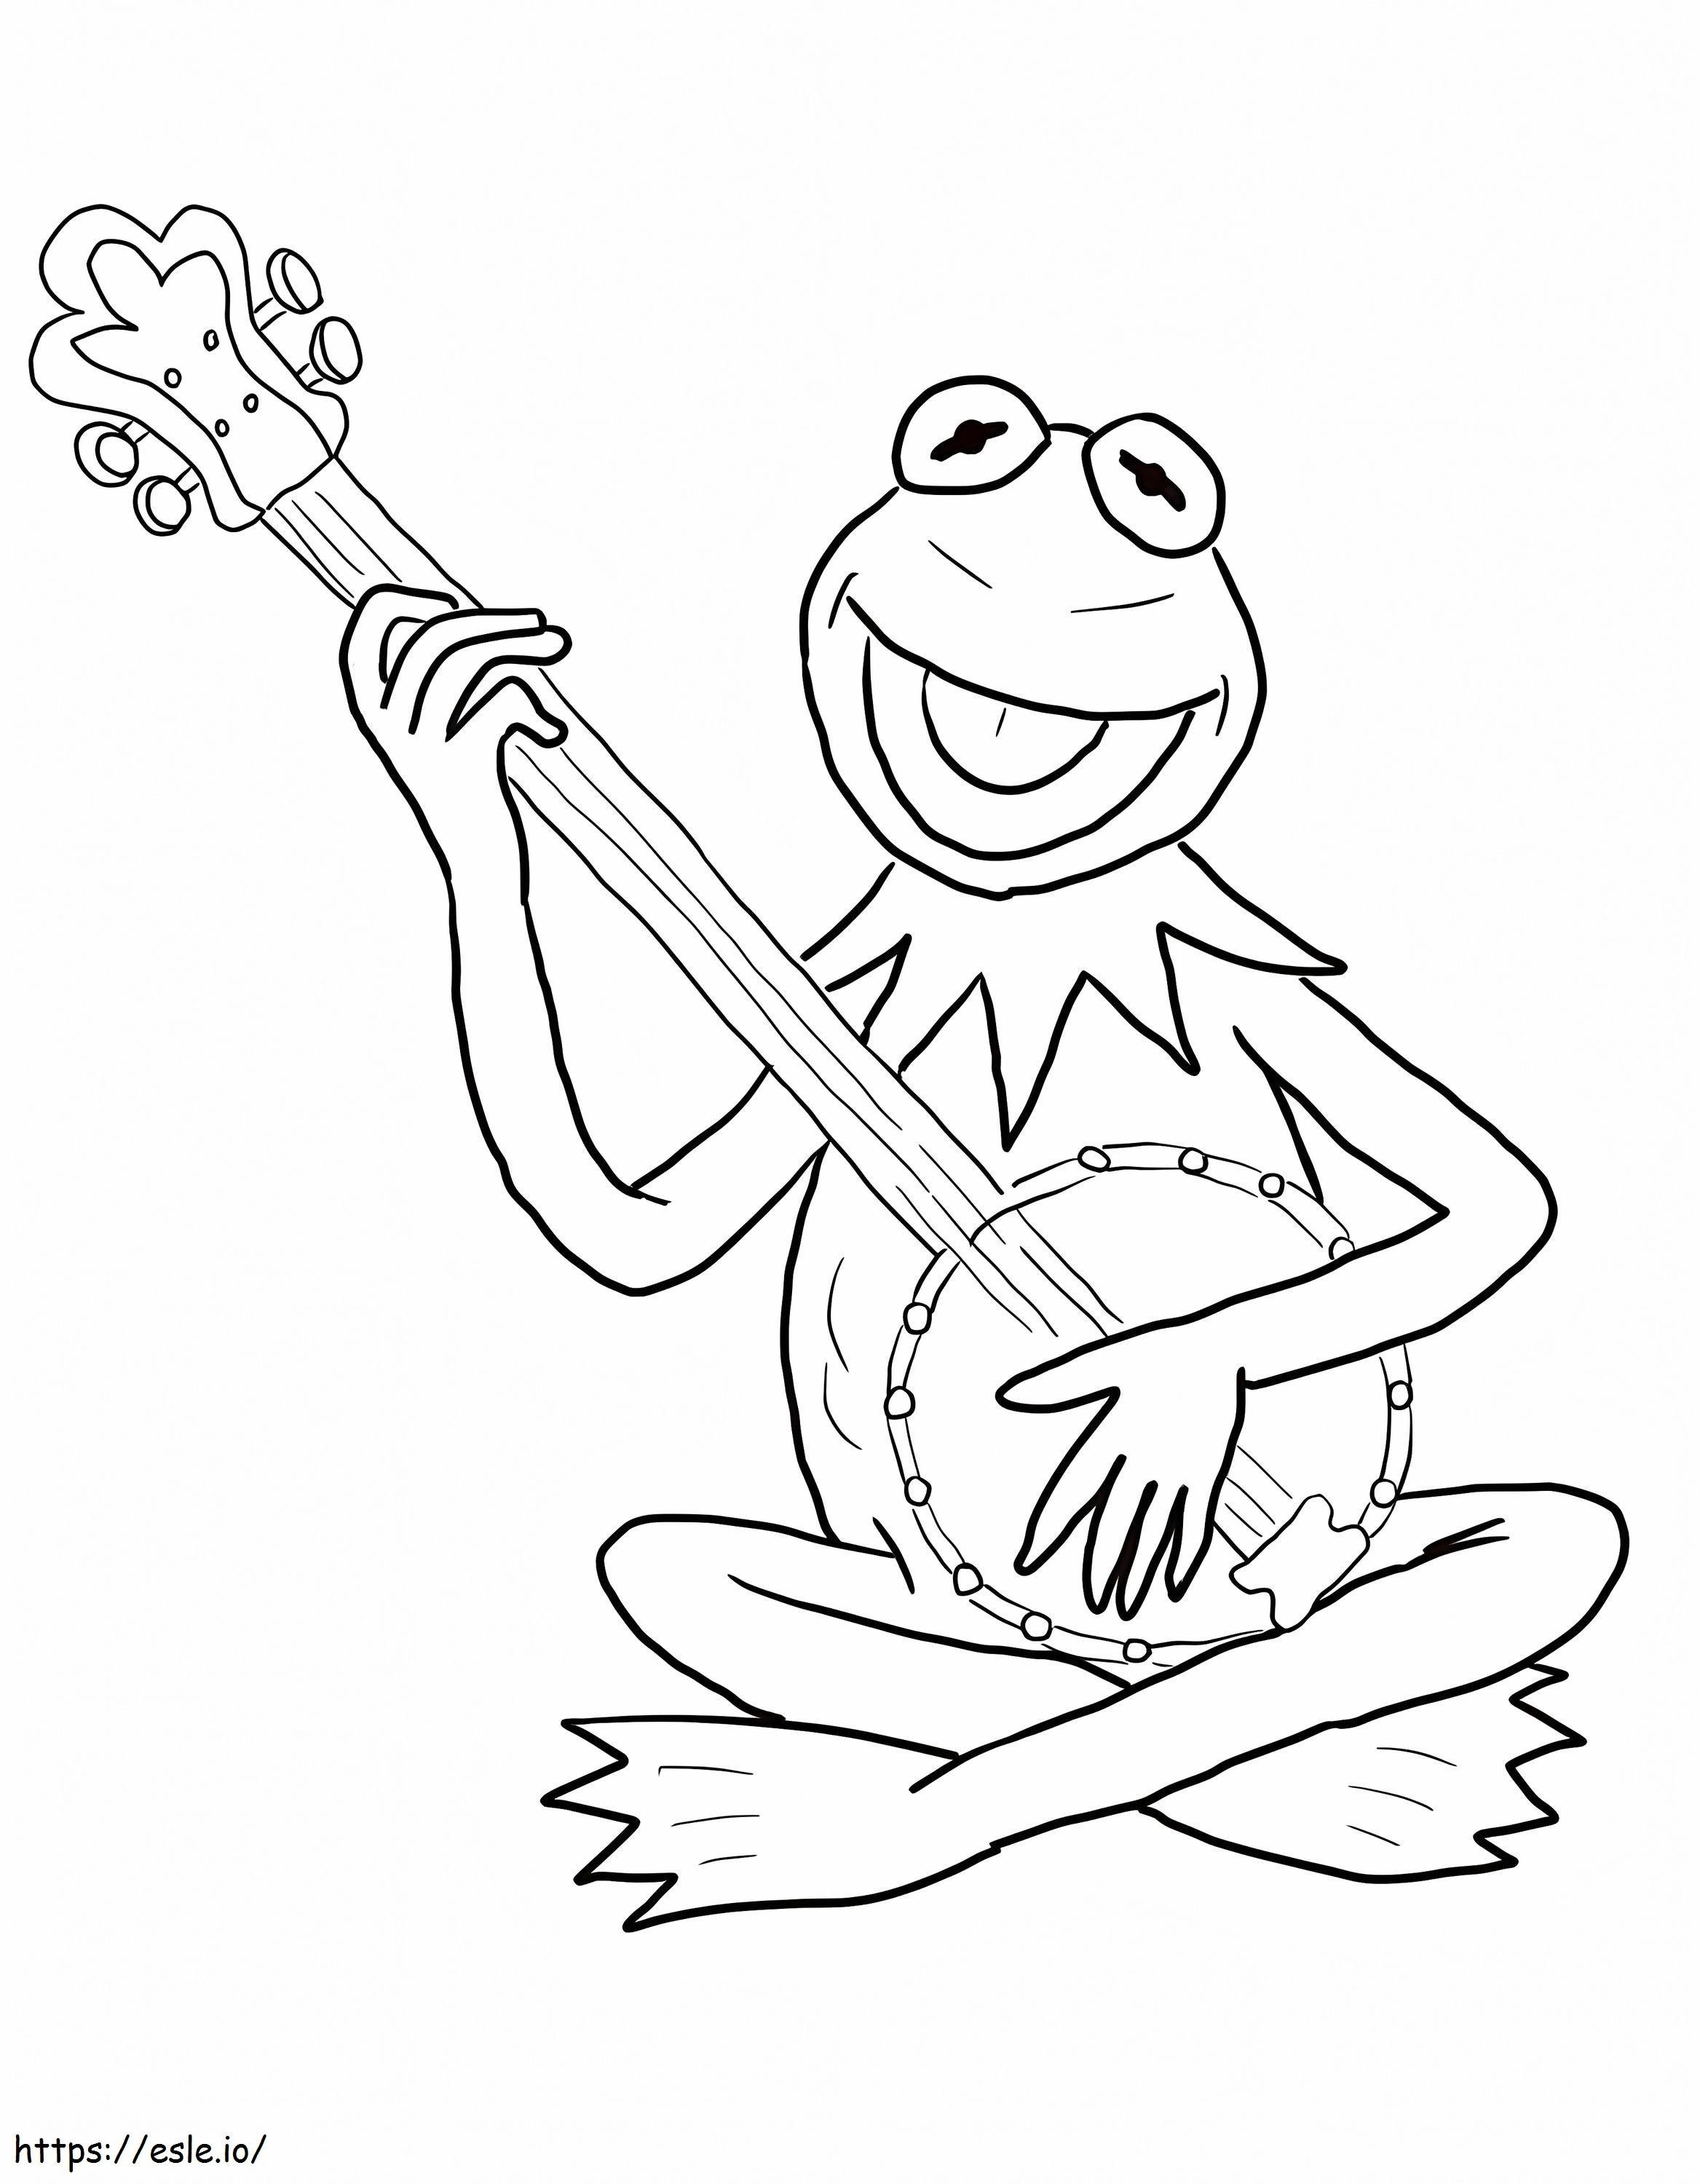 Kermit der Frosch spielt Banjo ausmalbilder